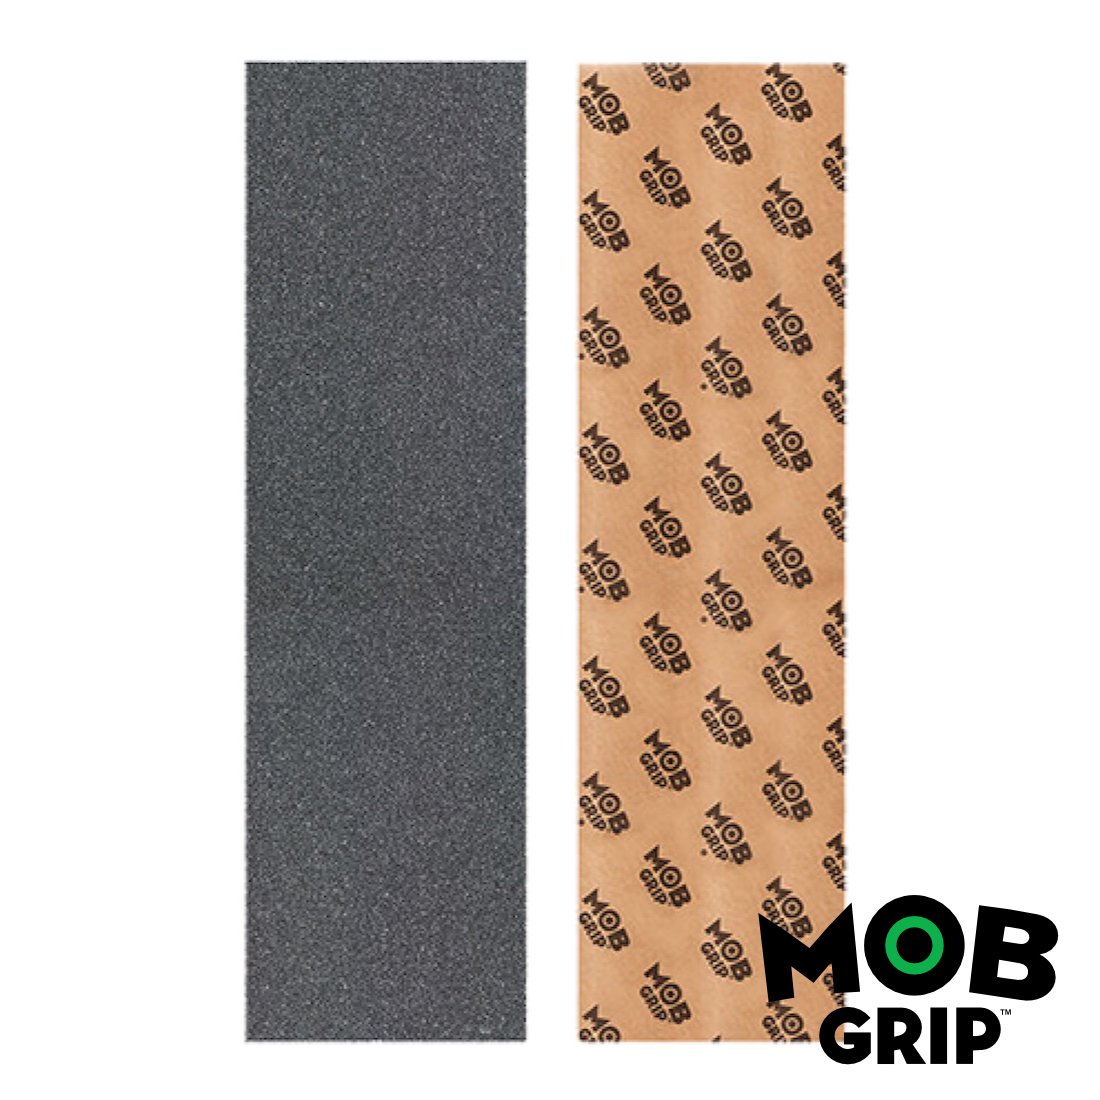 【Mob Grip】Standard Grip Tape